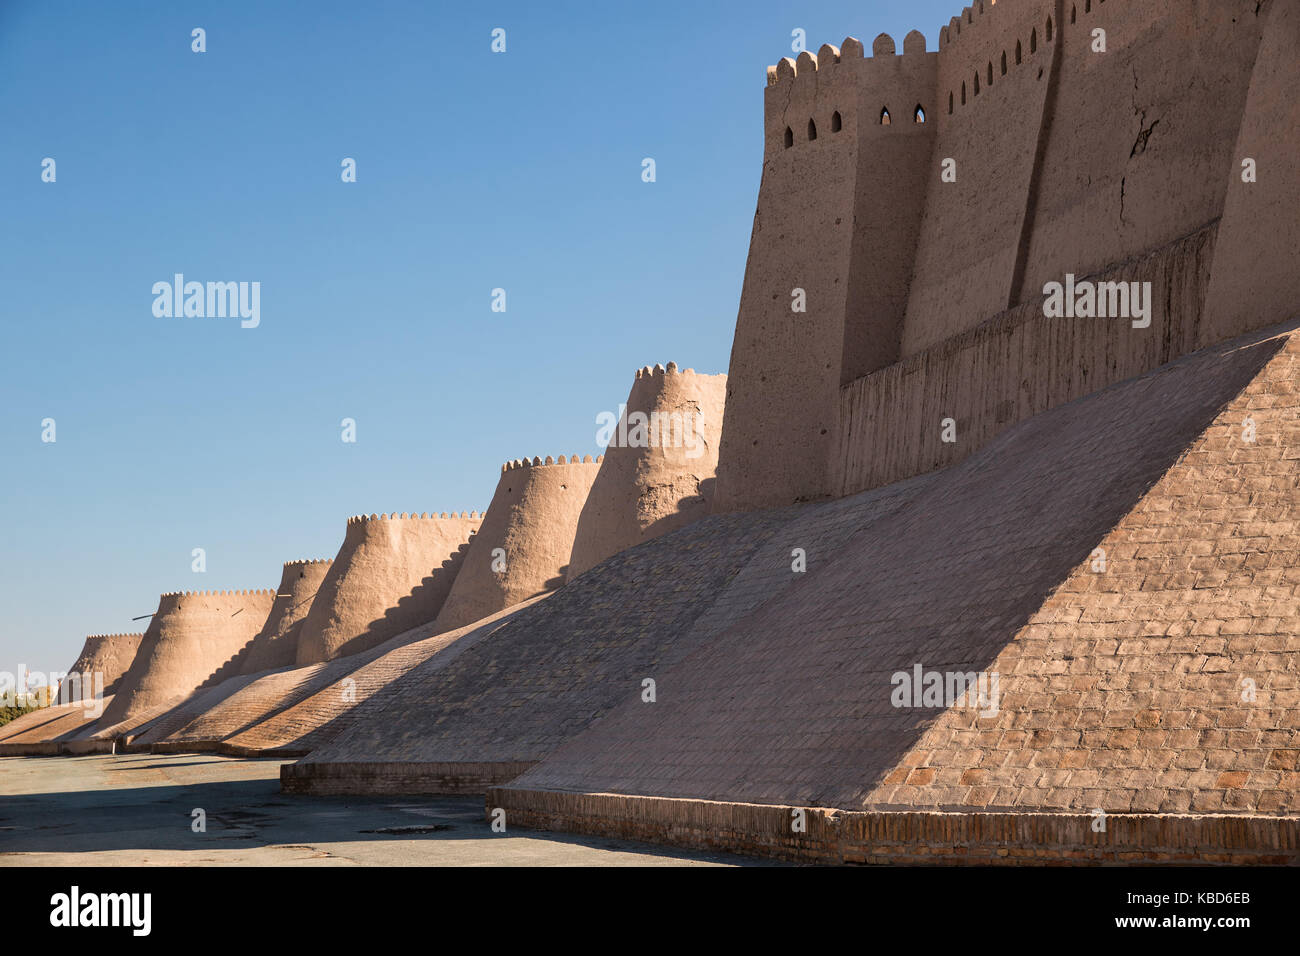 Murs de l'ancienne forteresse de ichan kala dans la ville de Khiva, Ouzbékistan Banque D'Images